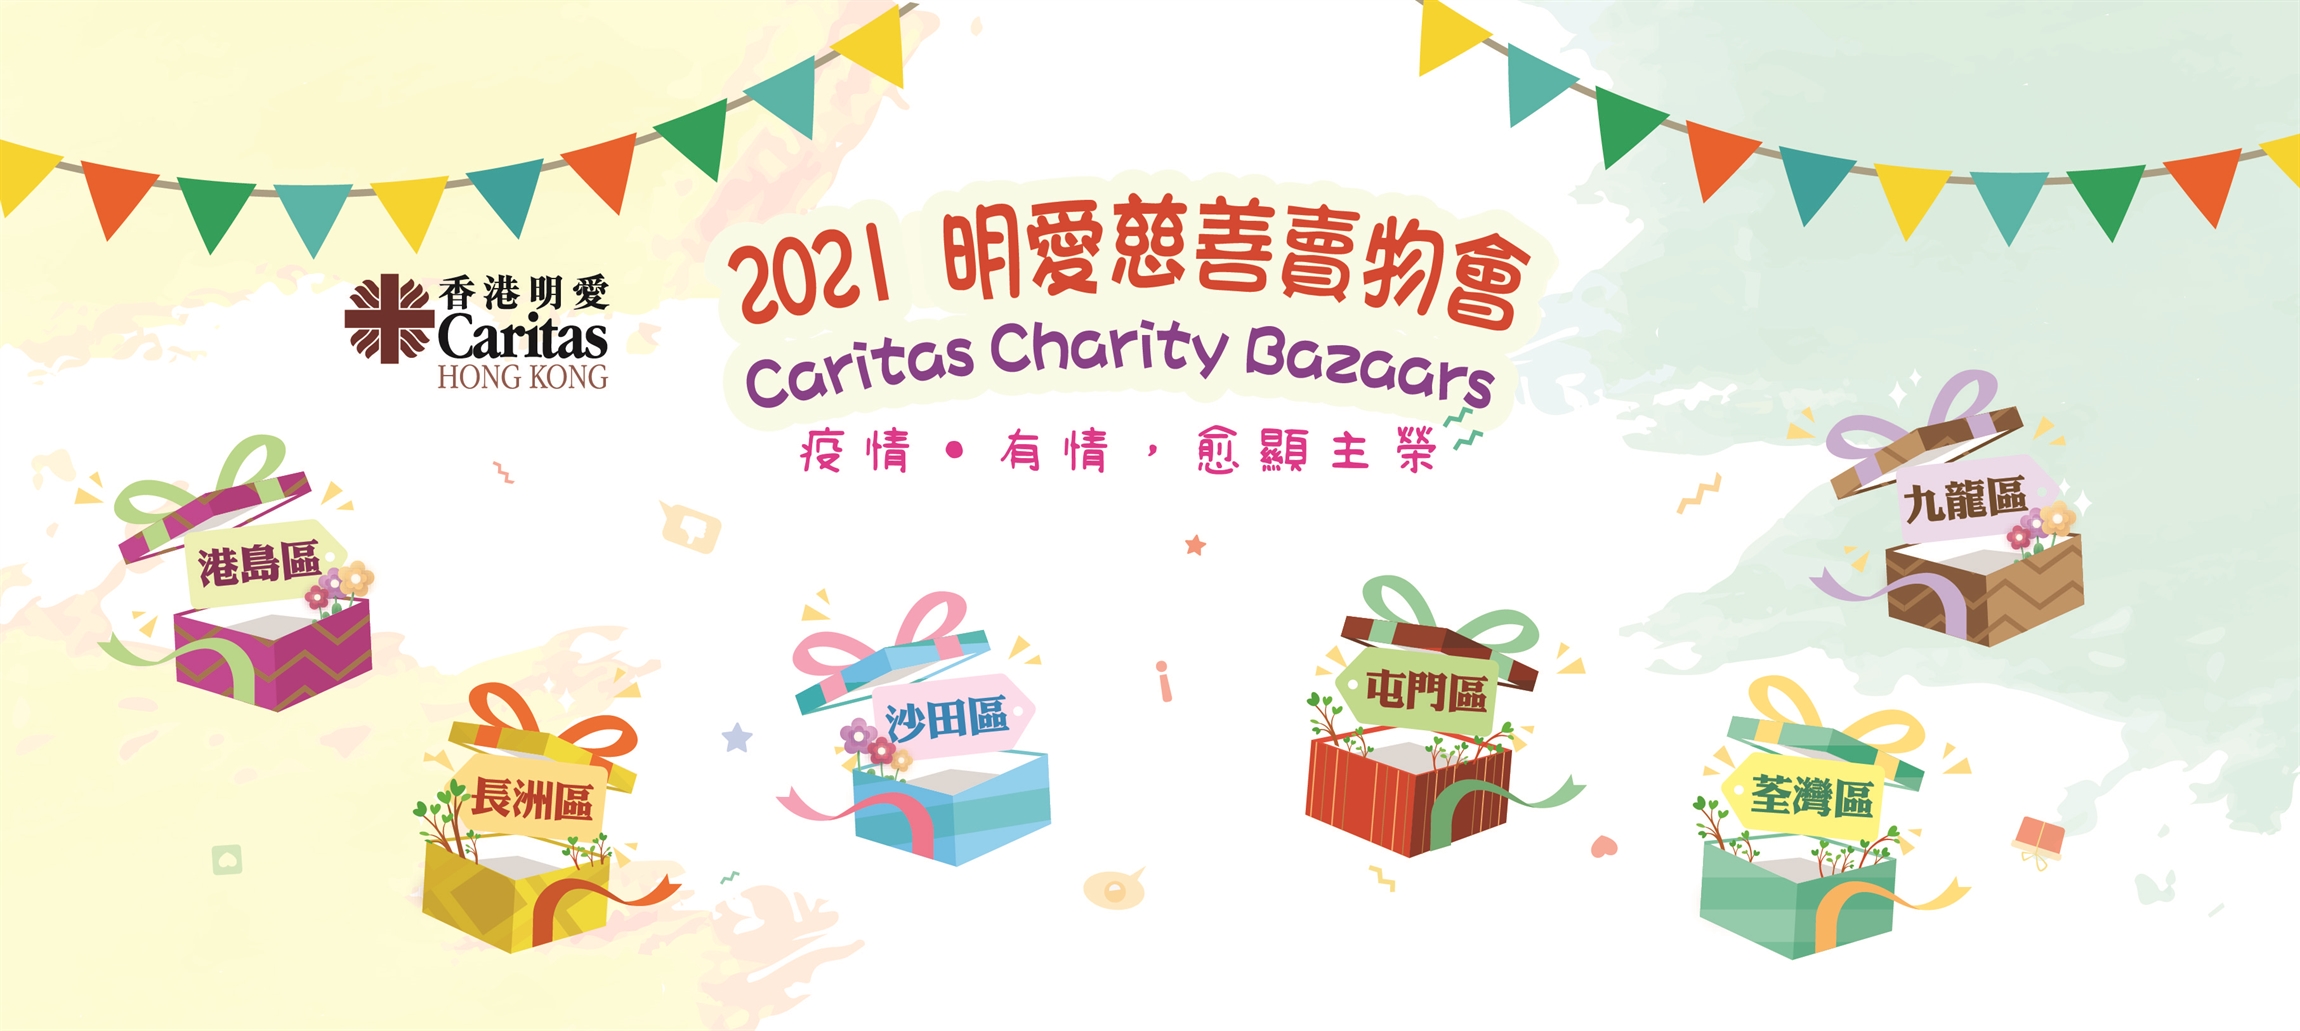 2021 Caritas Charity Bazaars